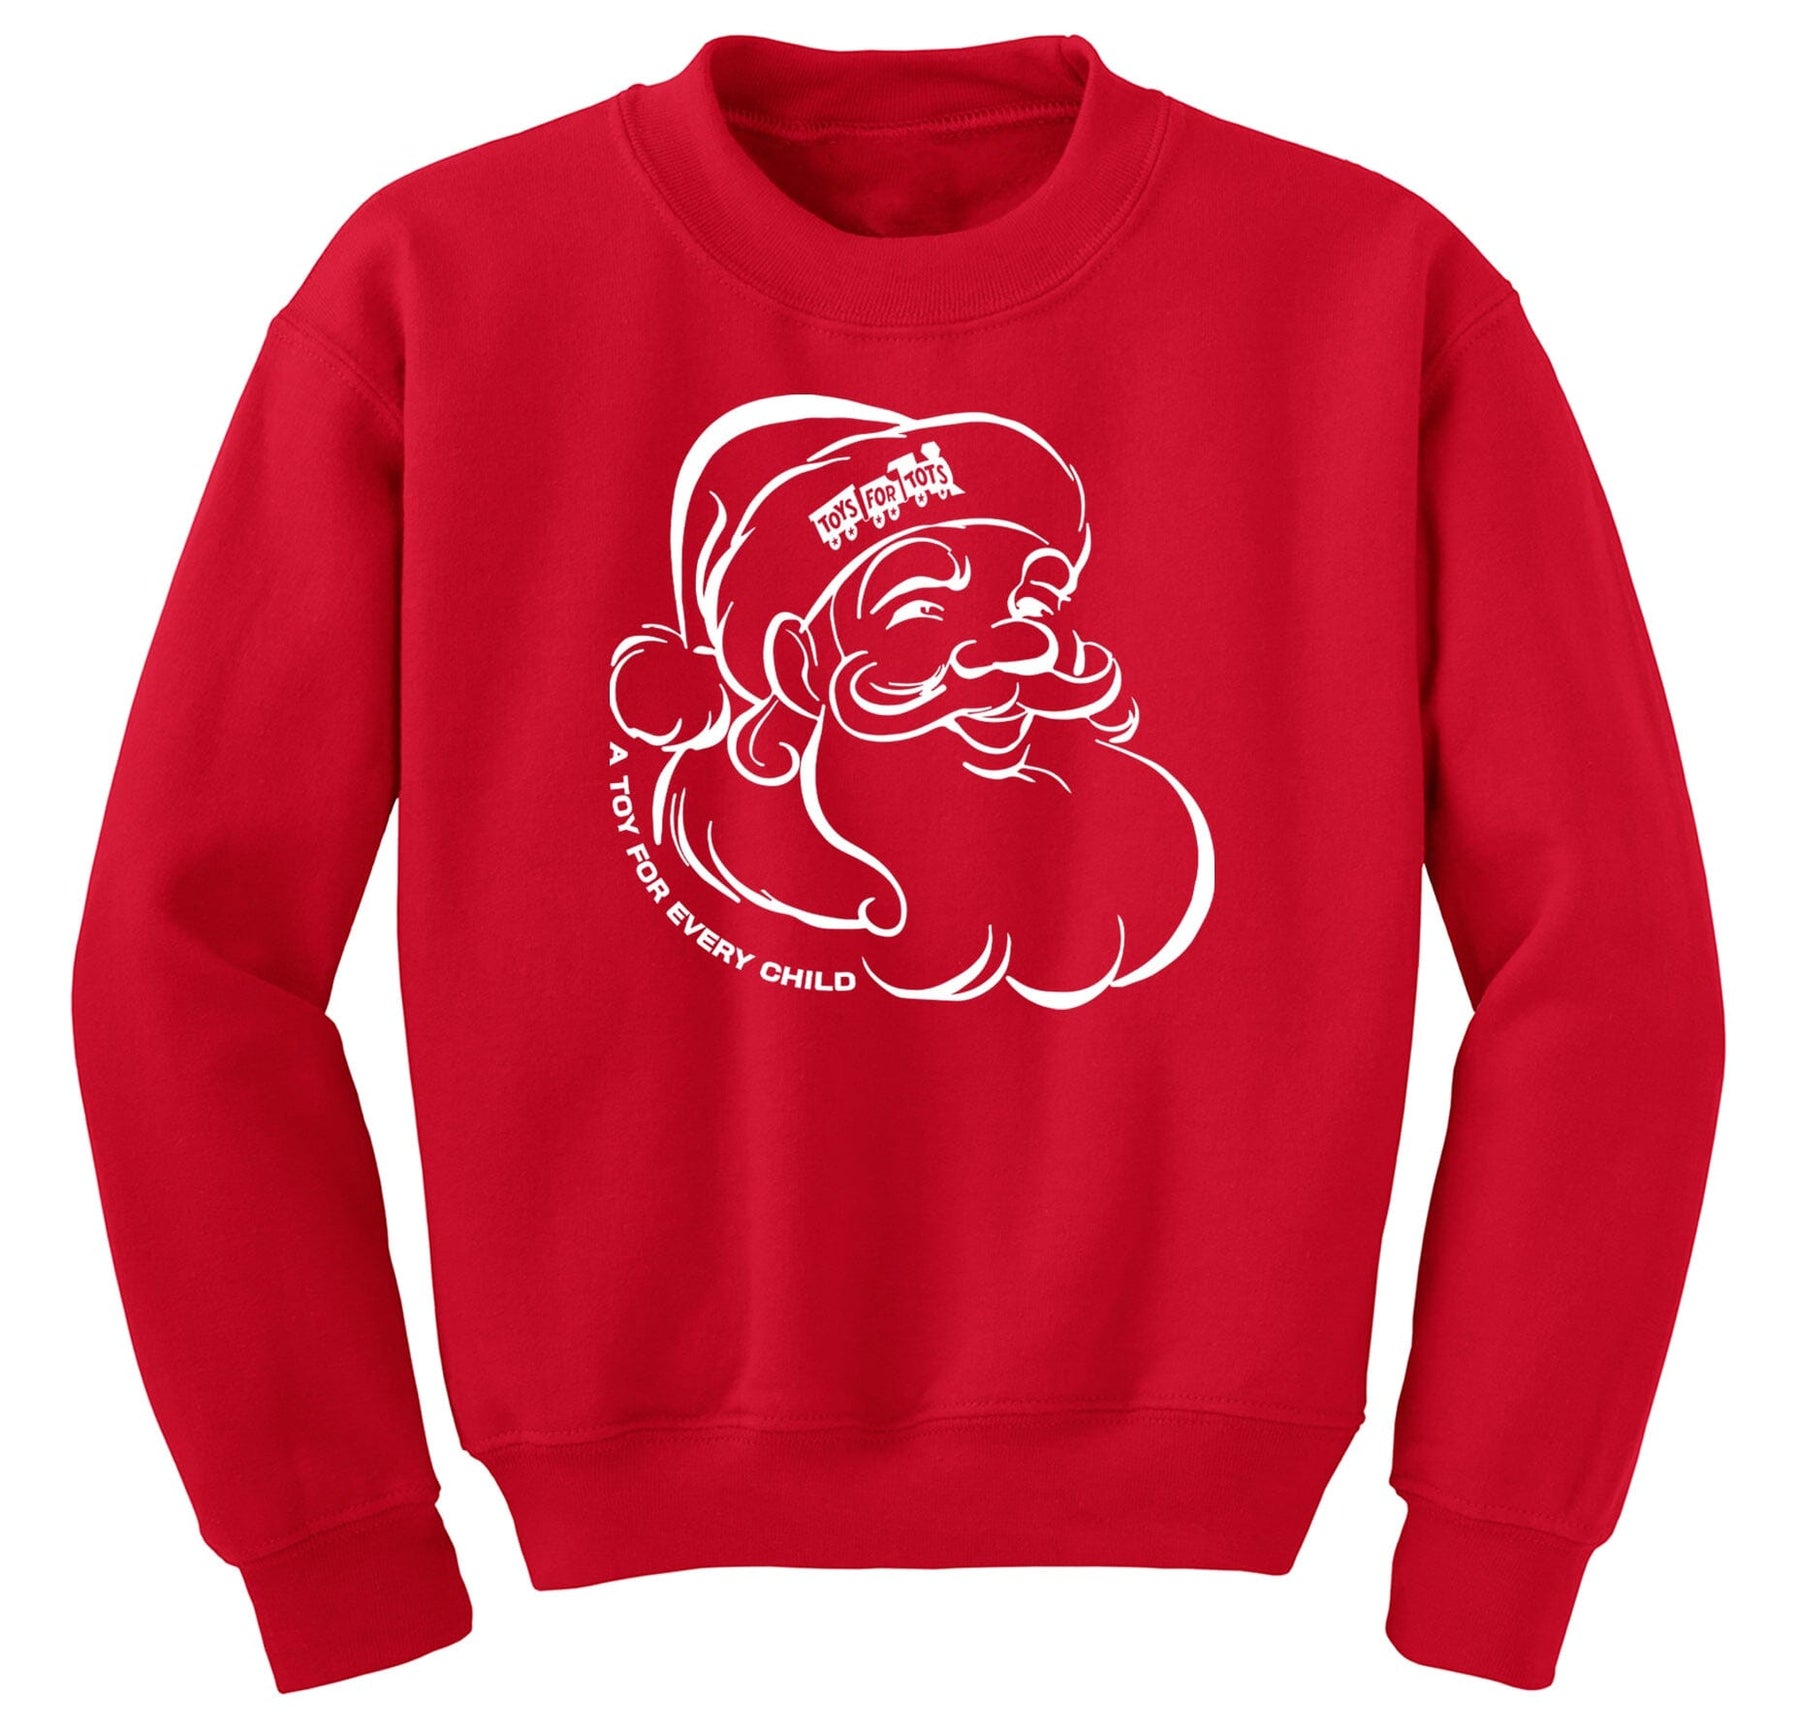 Santa Sweatshirt TFT Shirt Marine Corps Direct S RED 